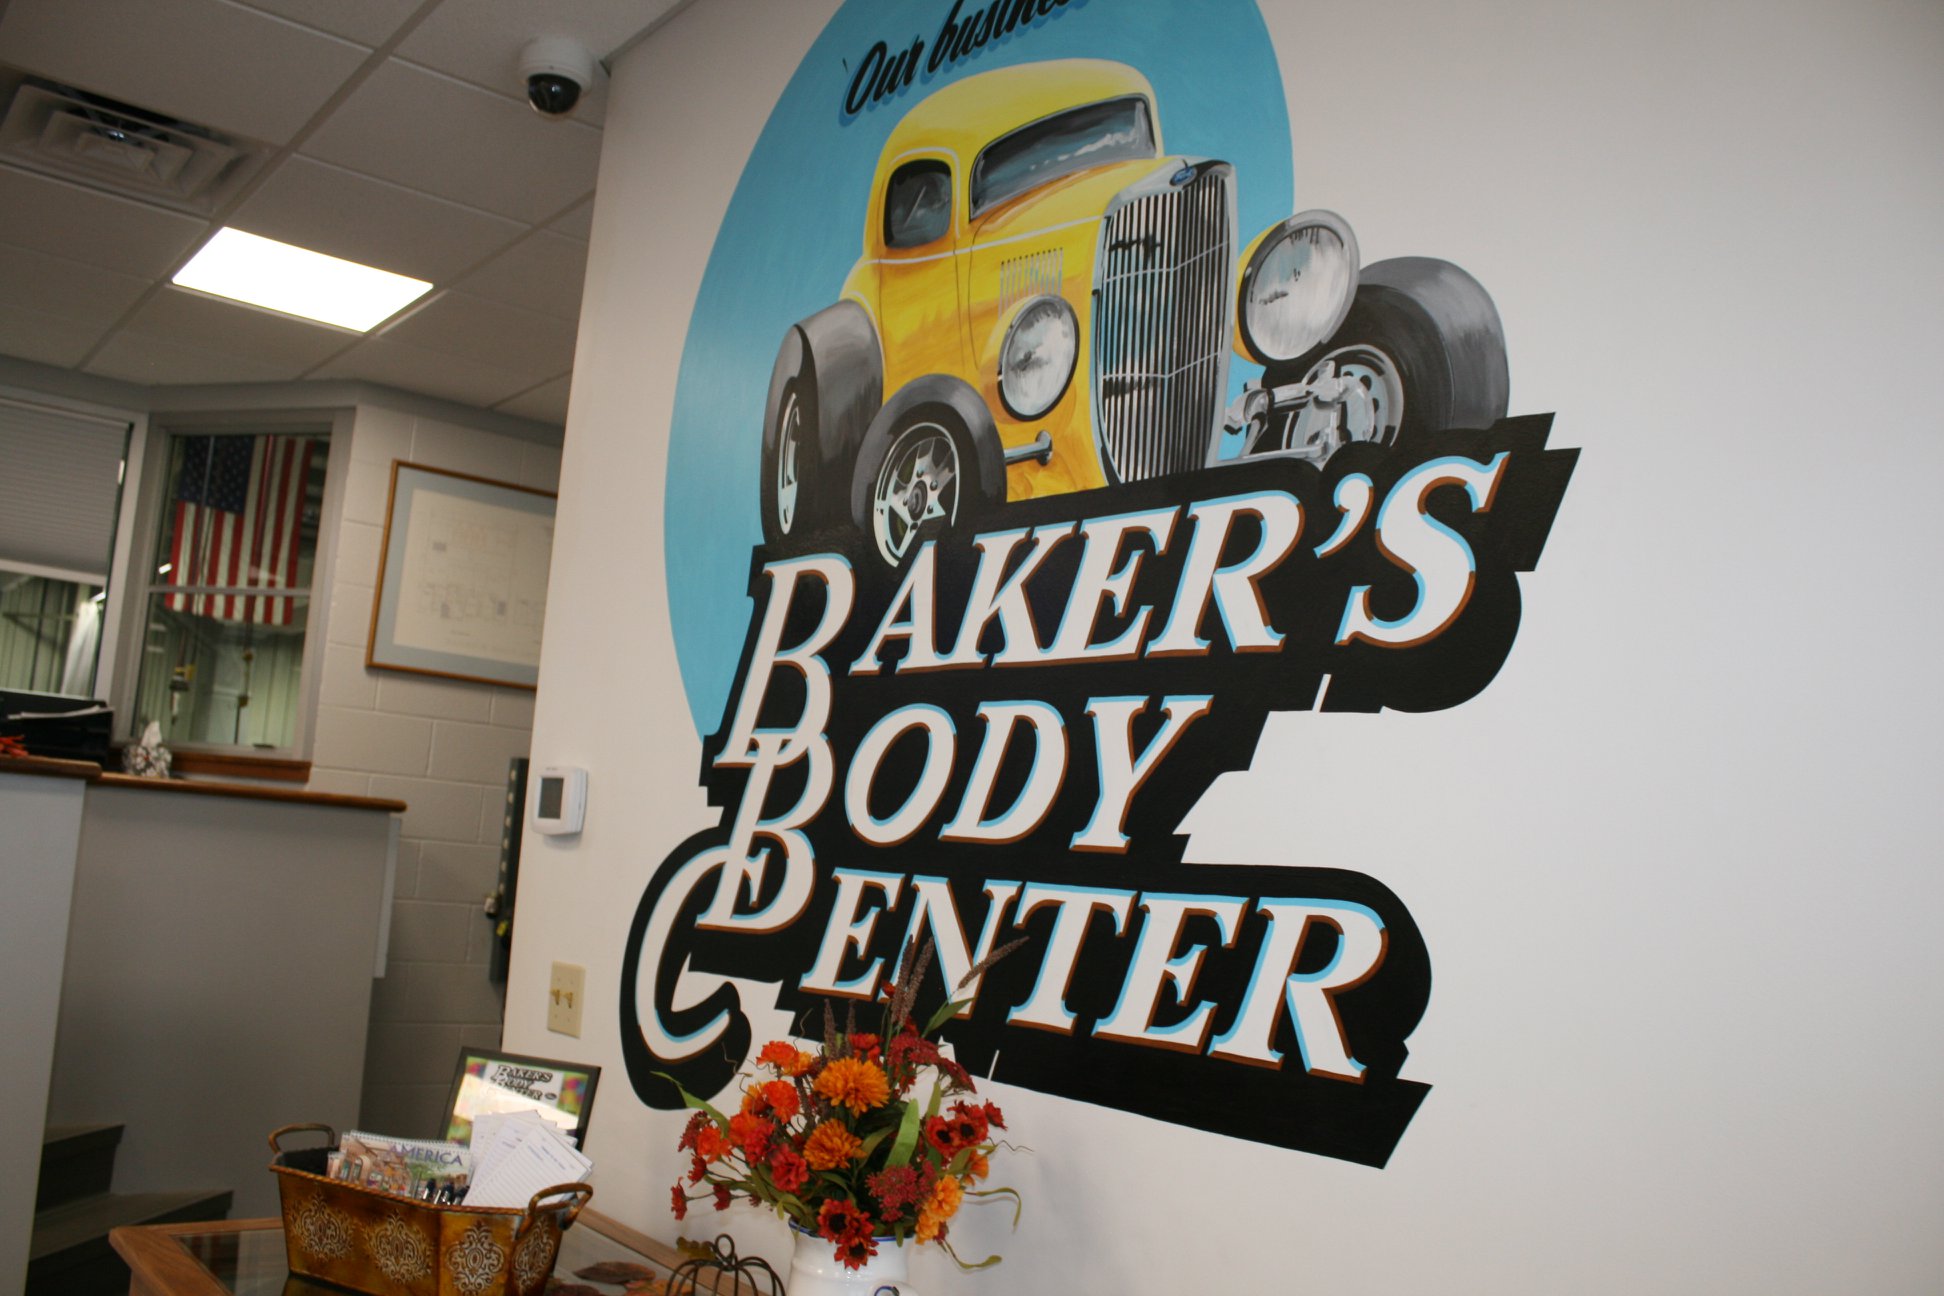 Baker's Body Center wall decal